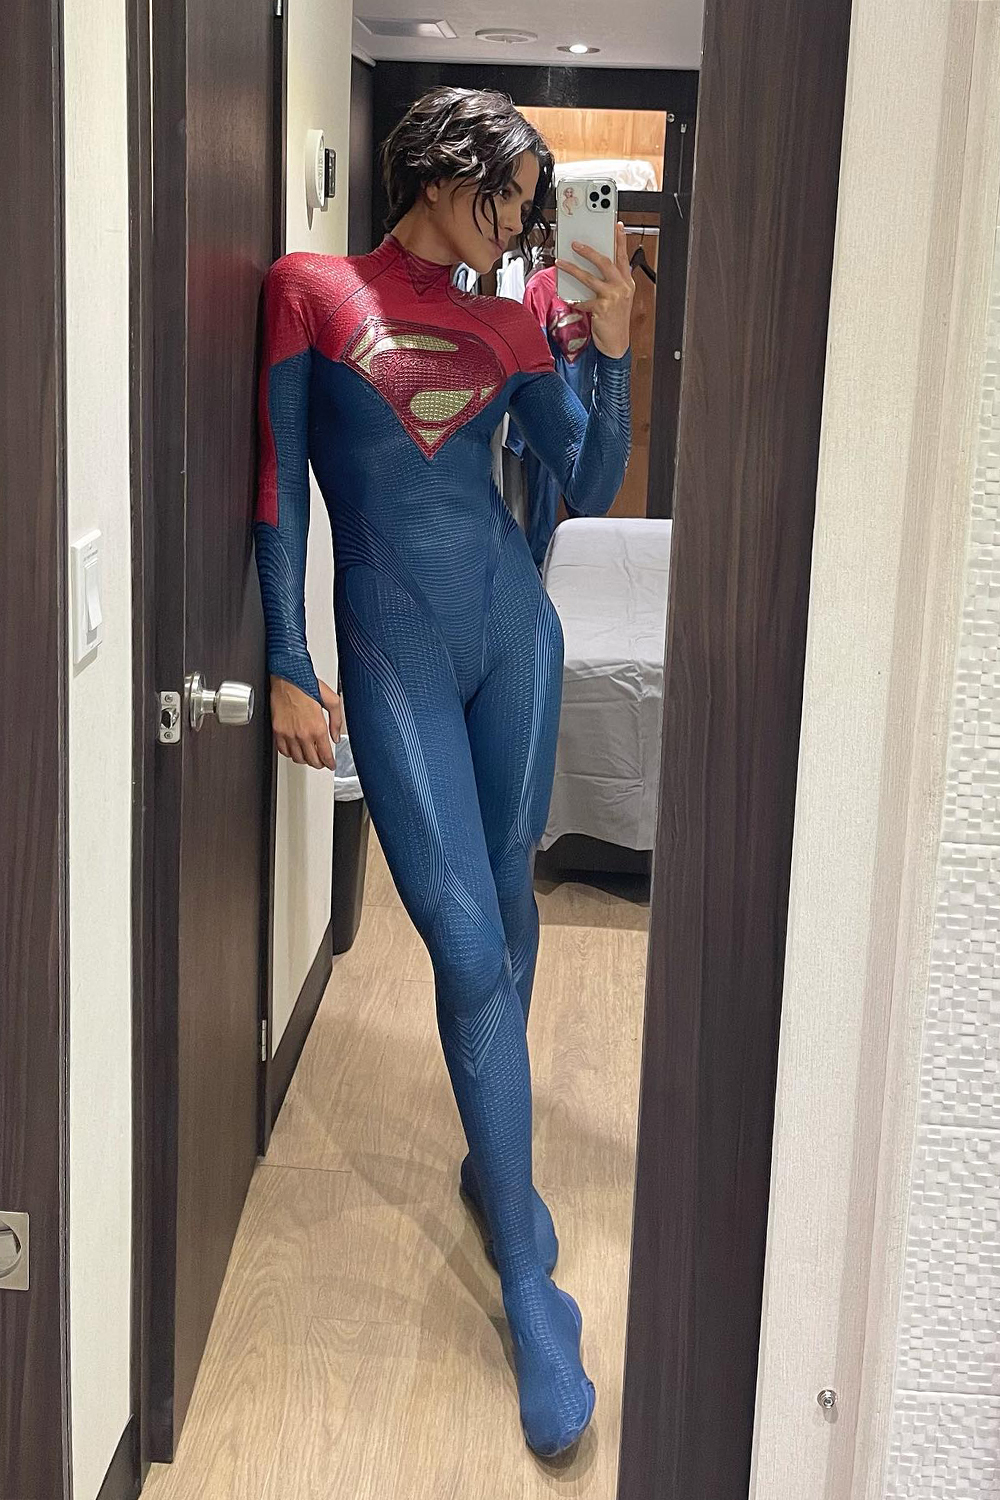 Sasha Calle là nữ diễn viên thứ ba vào vai Supergirl. Trước đó, diễn viên Helen Slater là người đầu tiên thủ vai trong phim Supergirl năm 1984, sau đó Melissa Benoist đóng trong series do đài CW sản xuất.